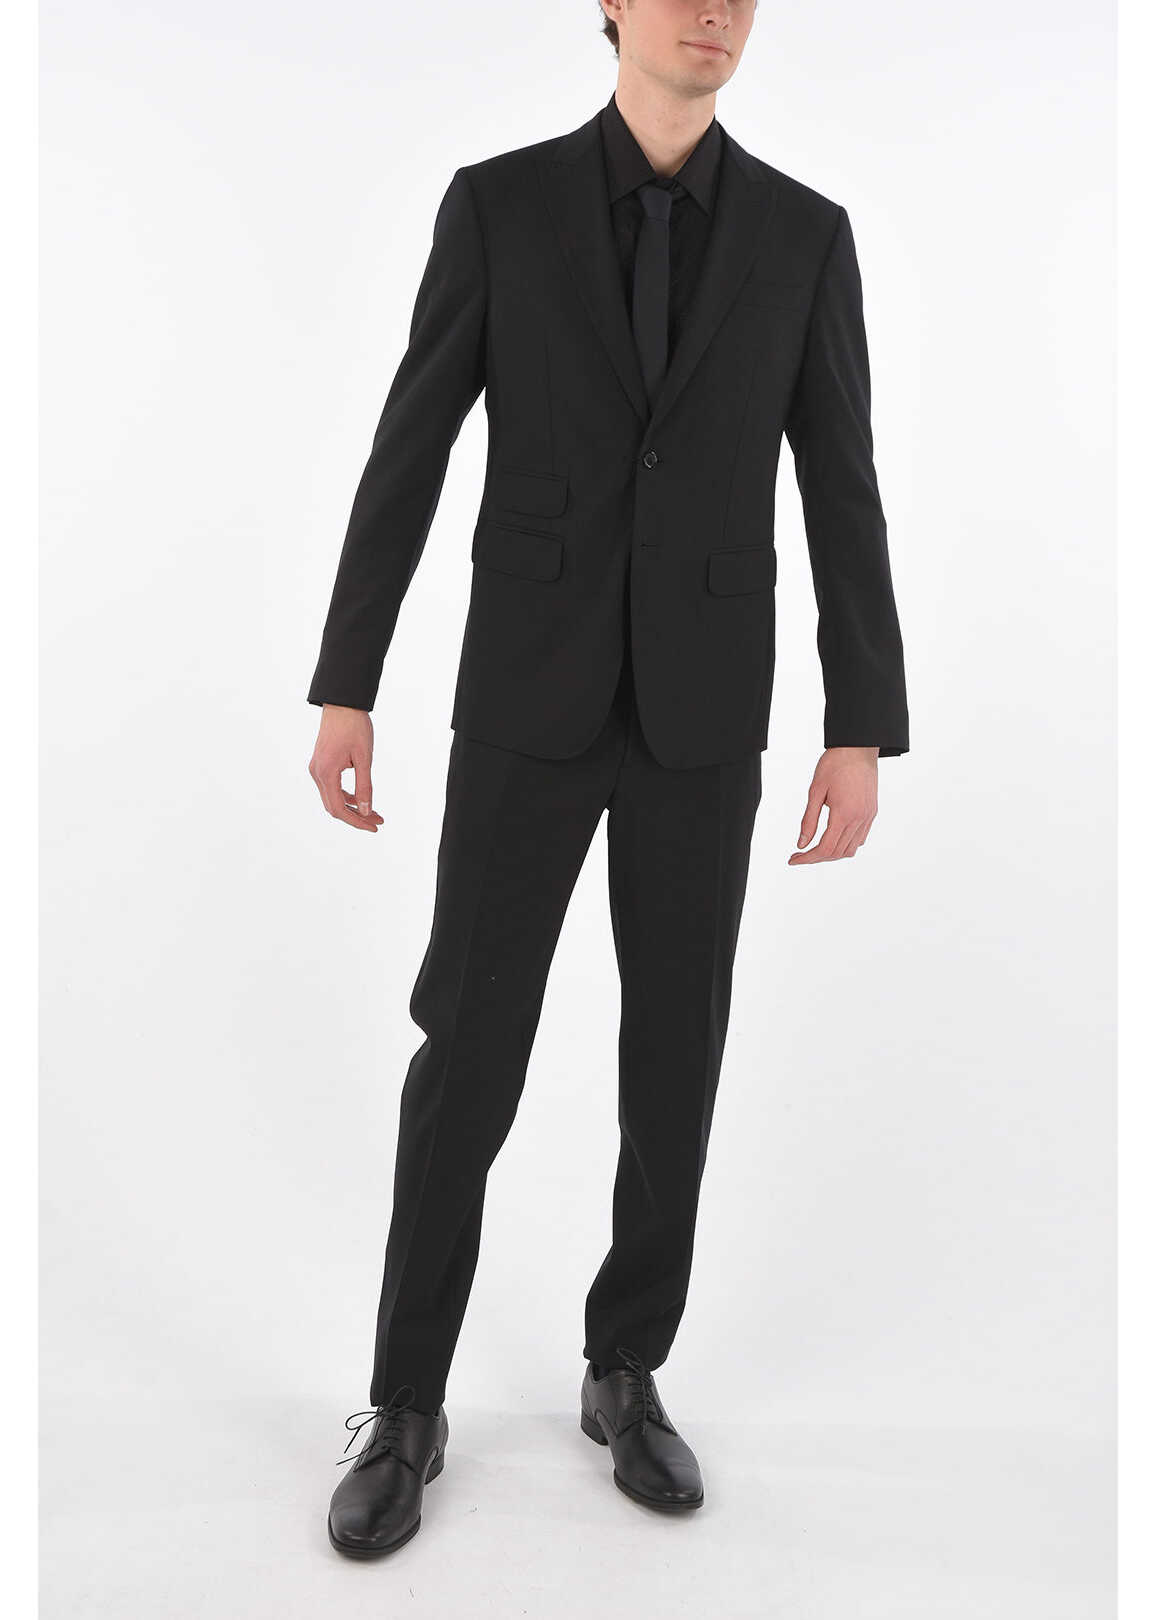 DSQUARED2 Virgin Wool Side Vents Peak Lapel 2-Button London Suit* Black image0